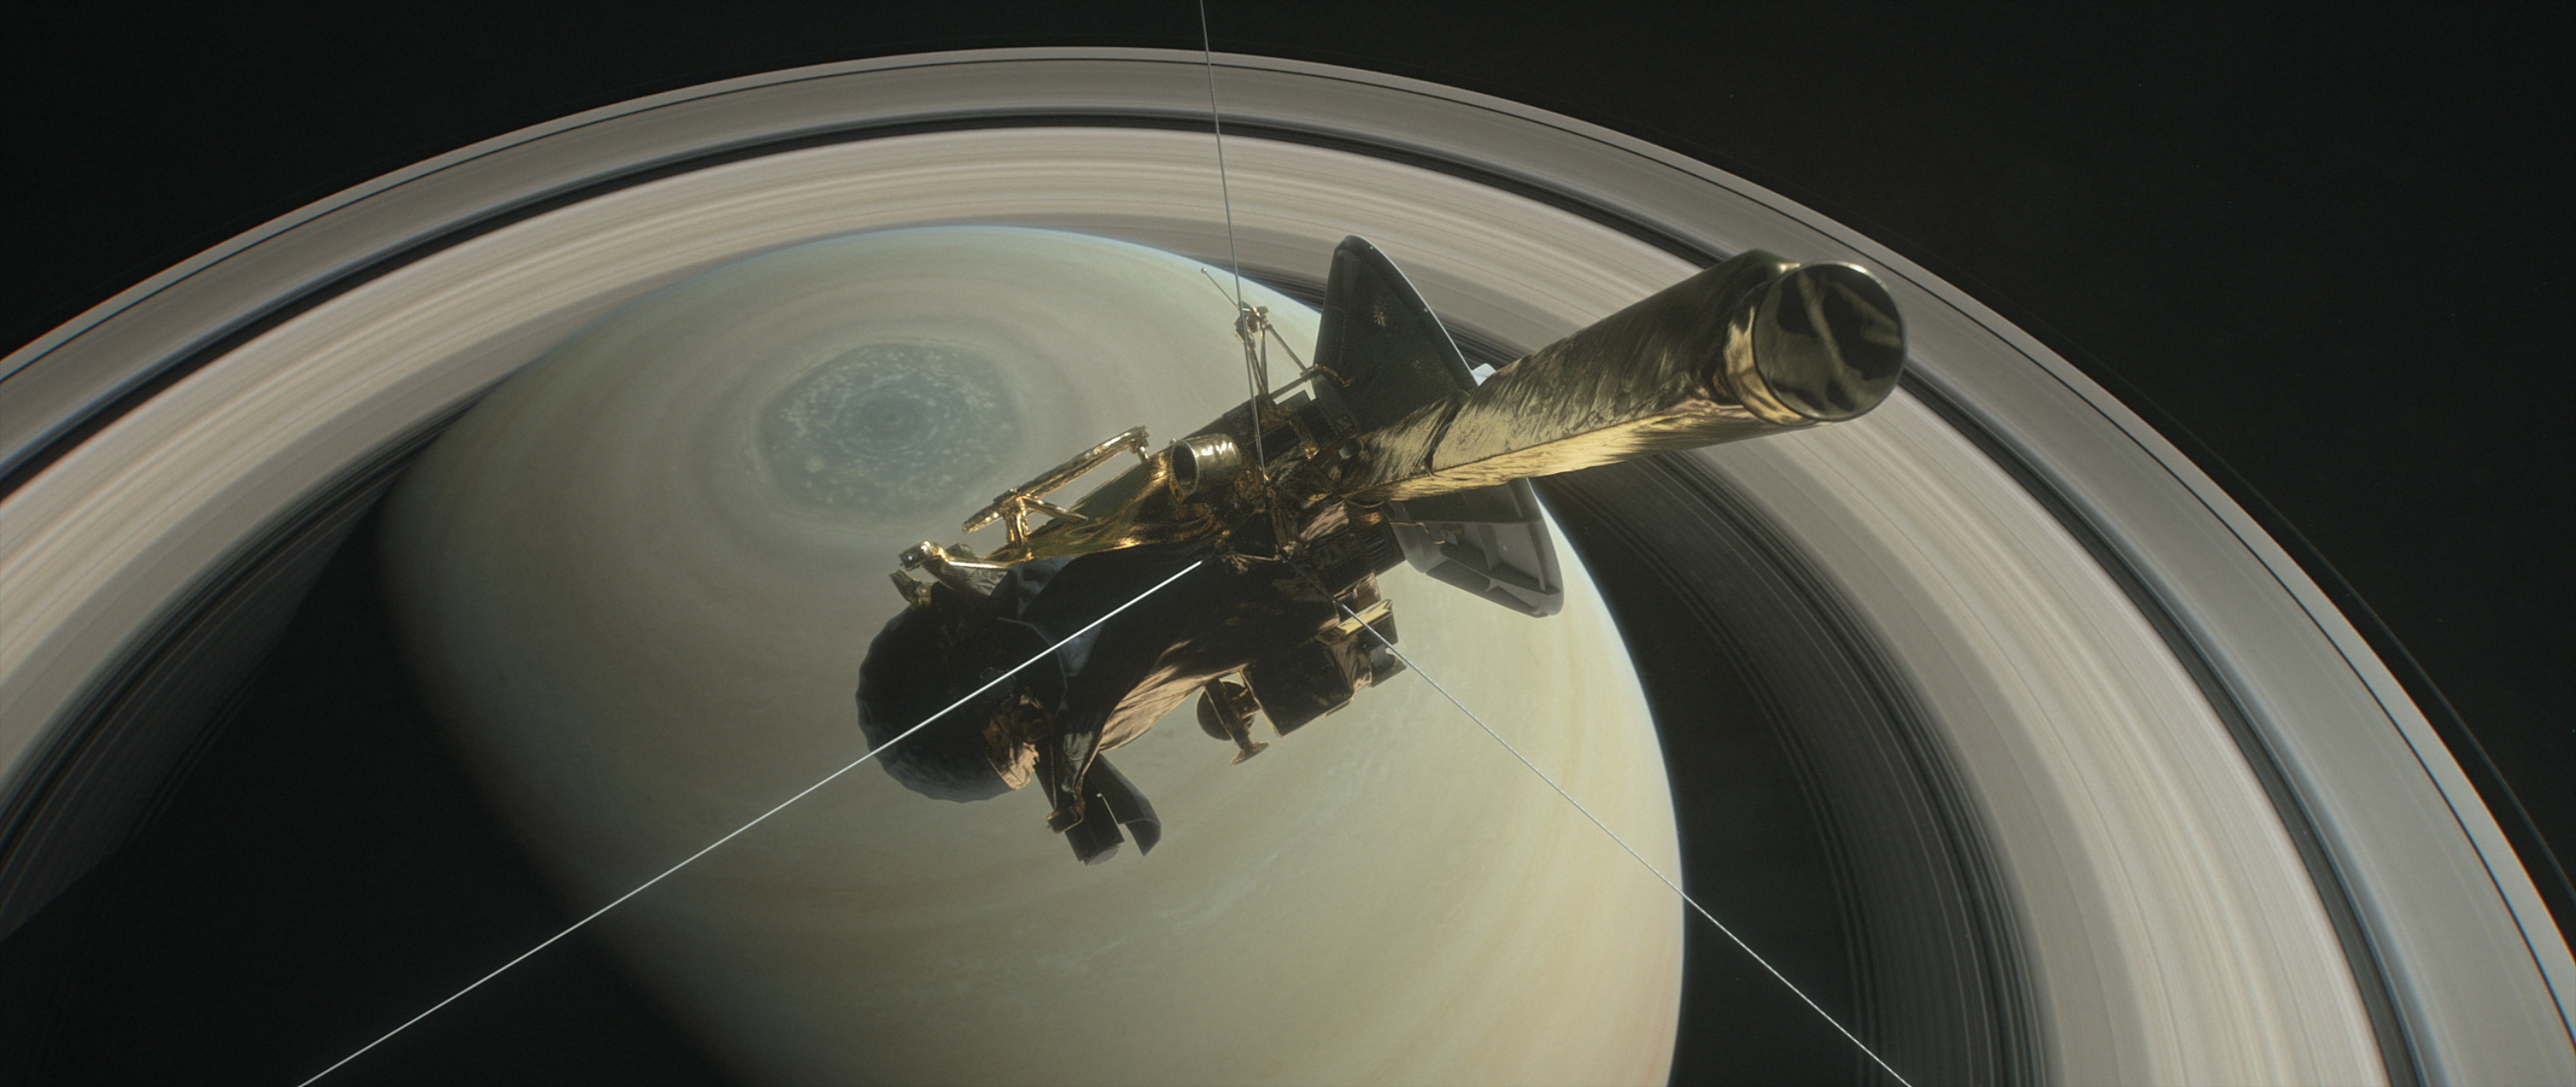 La nave Cassini de la NASA, en órbita alrededor de Saturno desde 2004, está a punto de comenzar el capítulo final